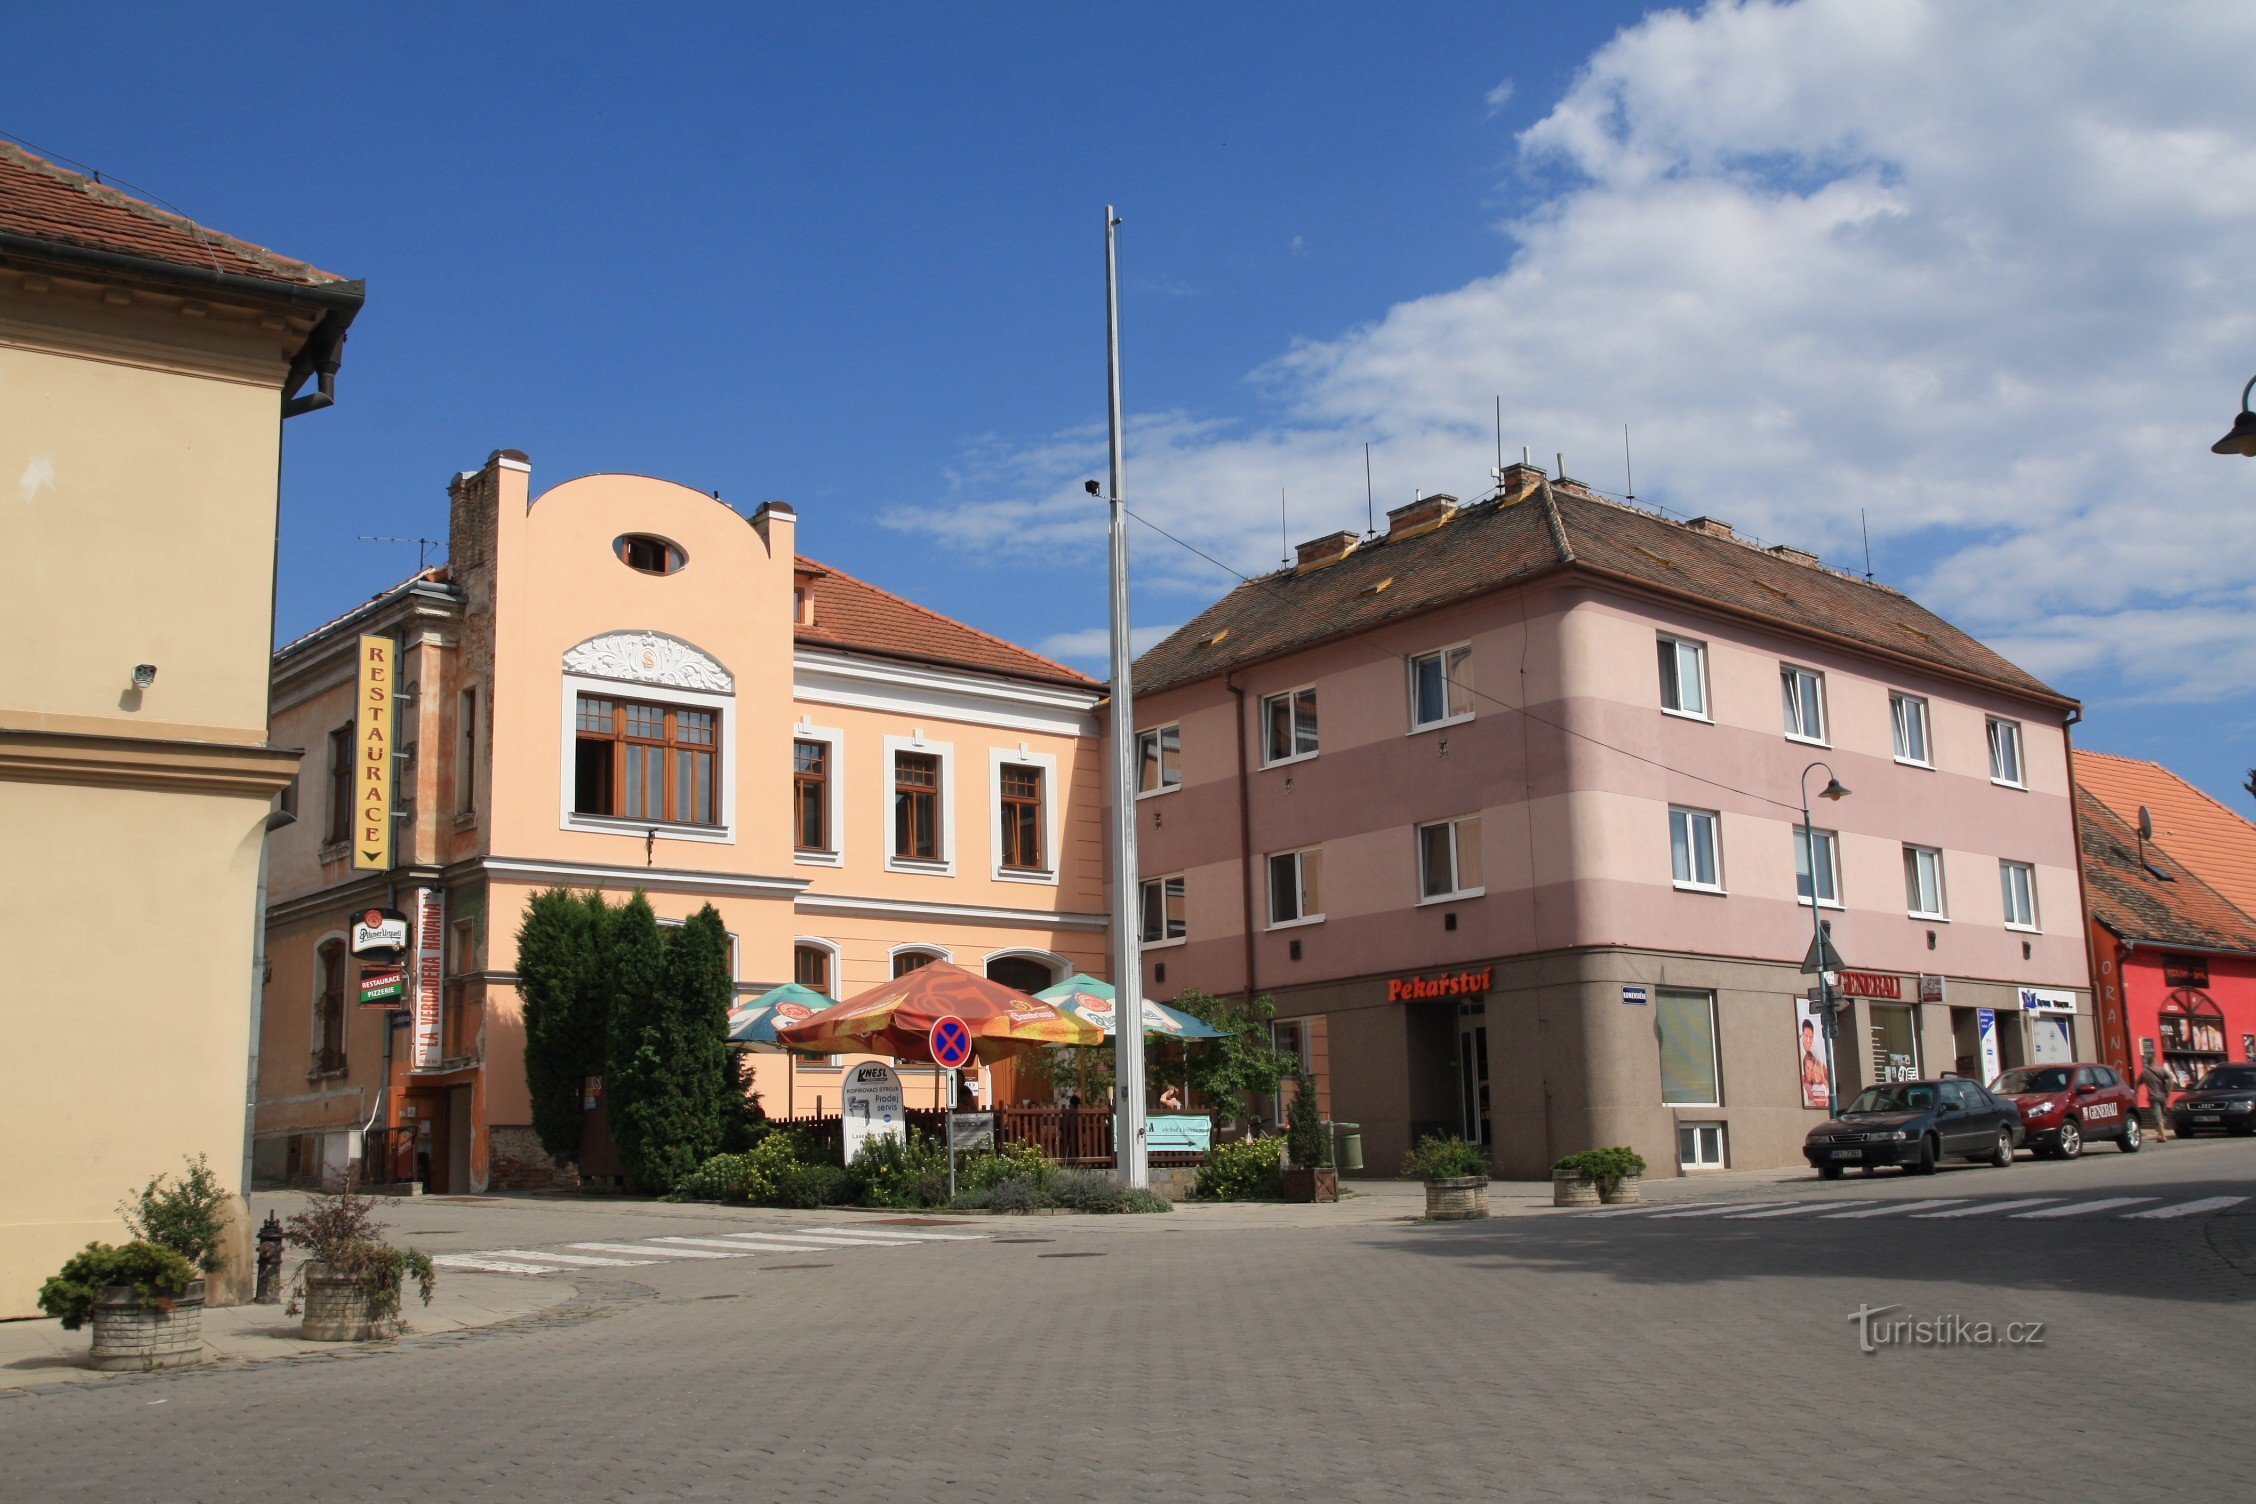 ジドロホヴィツェ平和広場